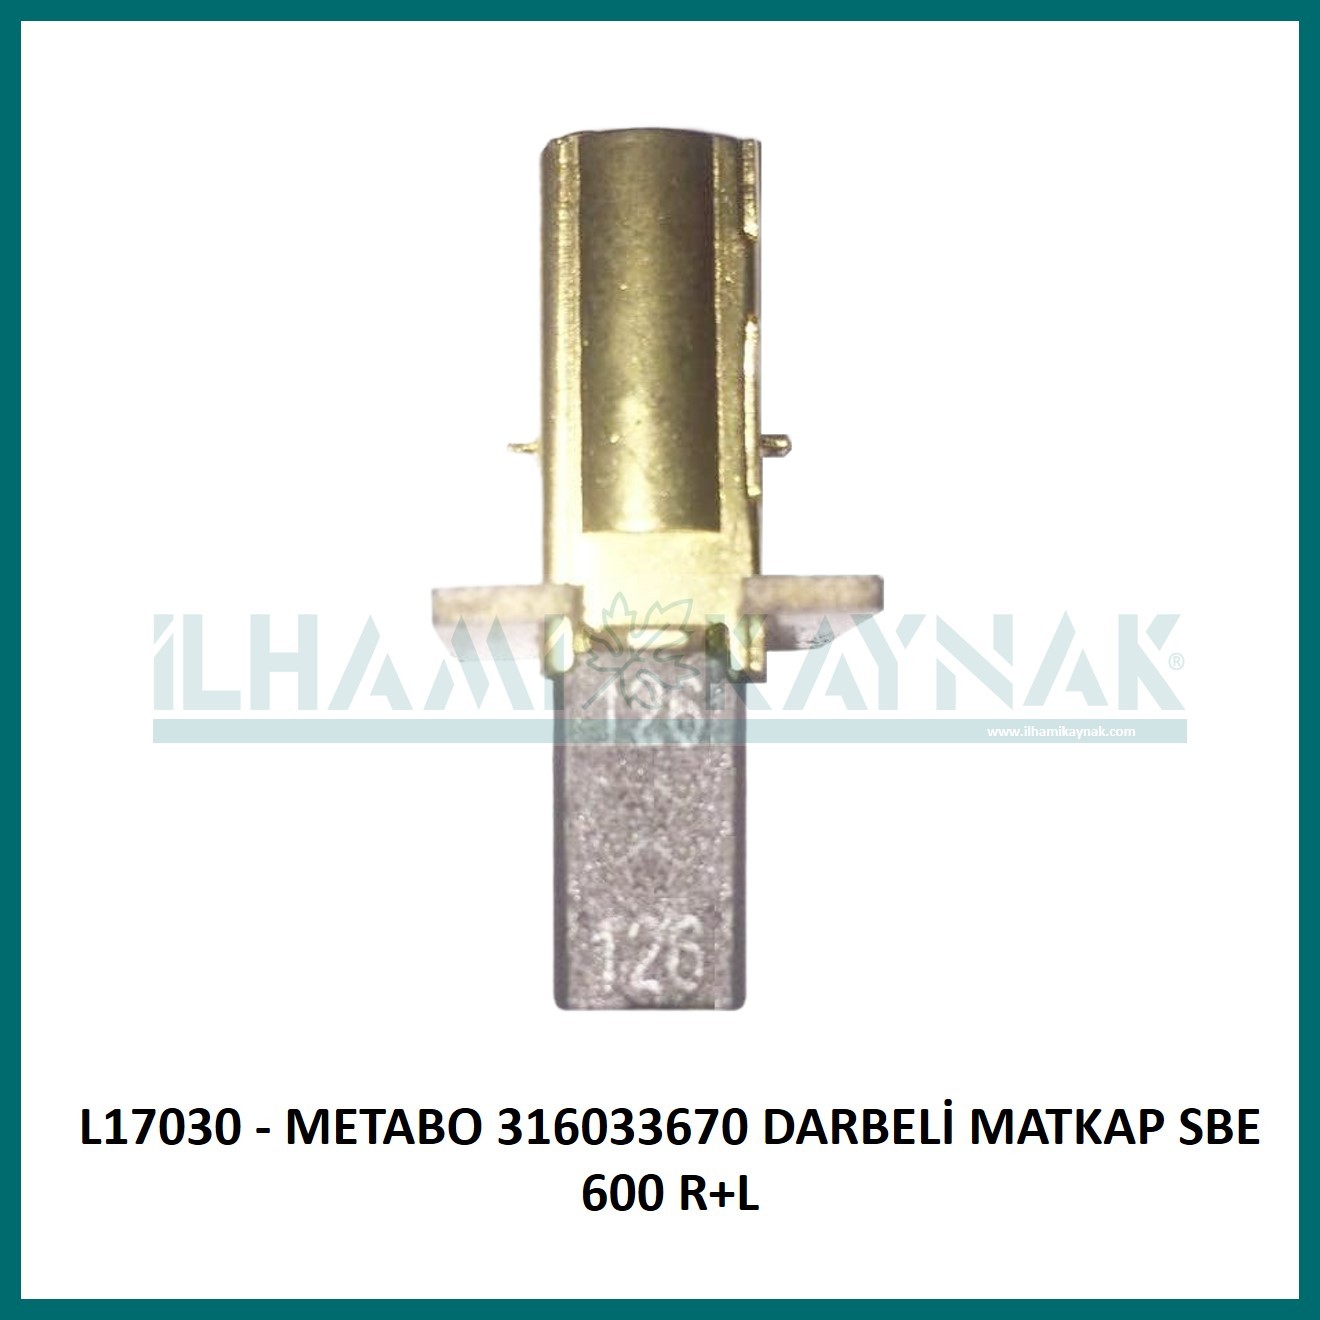 L17030 - METABO 316033670 DARBELİ MATKAP SBE 600 R+L  - 5*8*14 mm - Minimum Satın Alım: 10 Adet